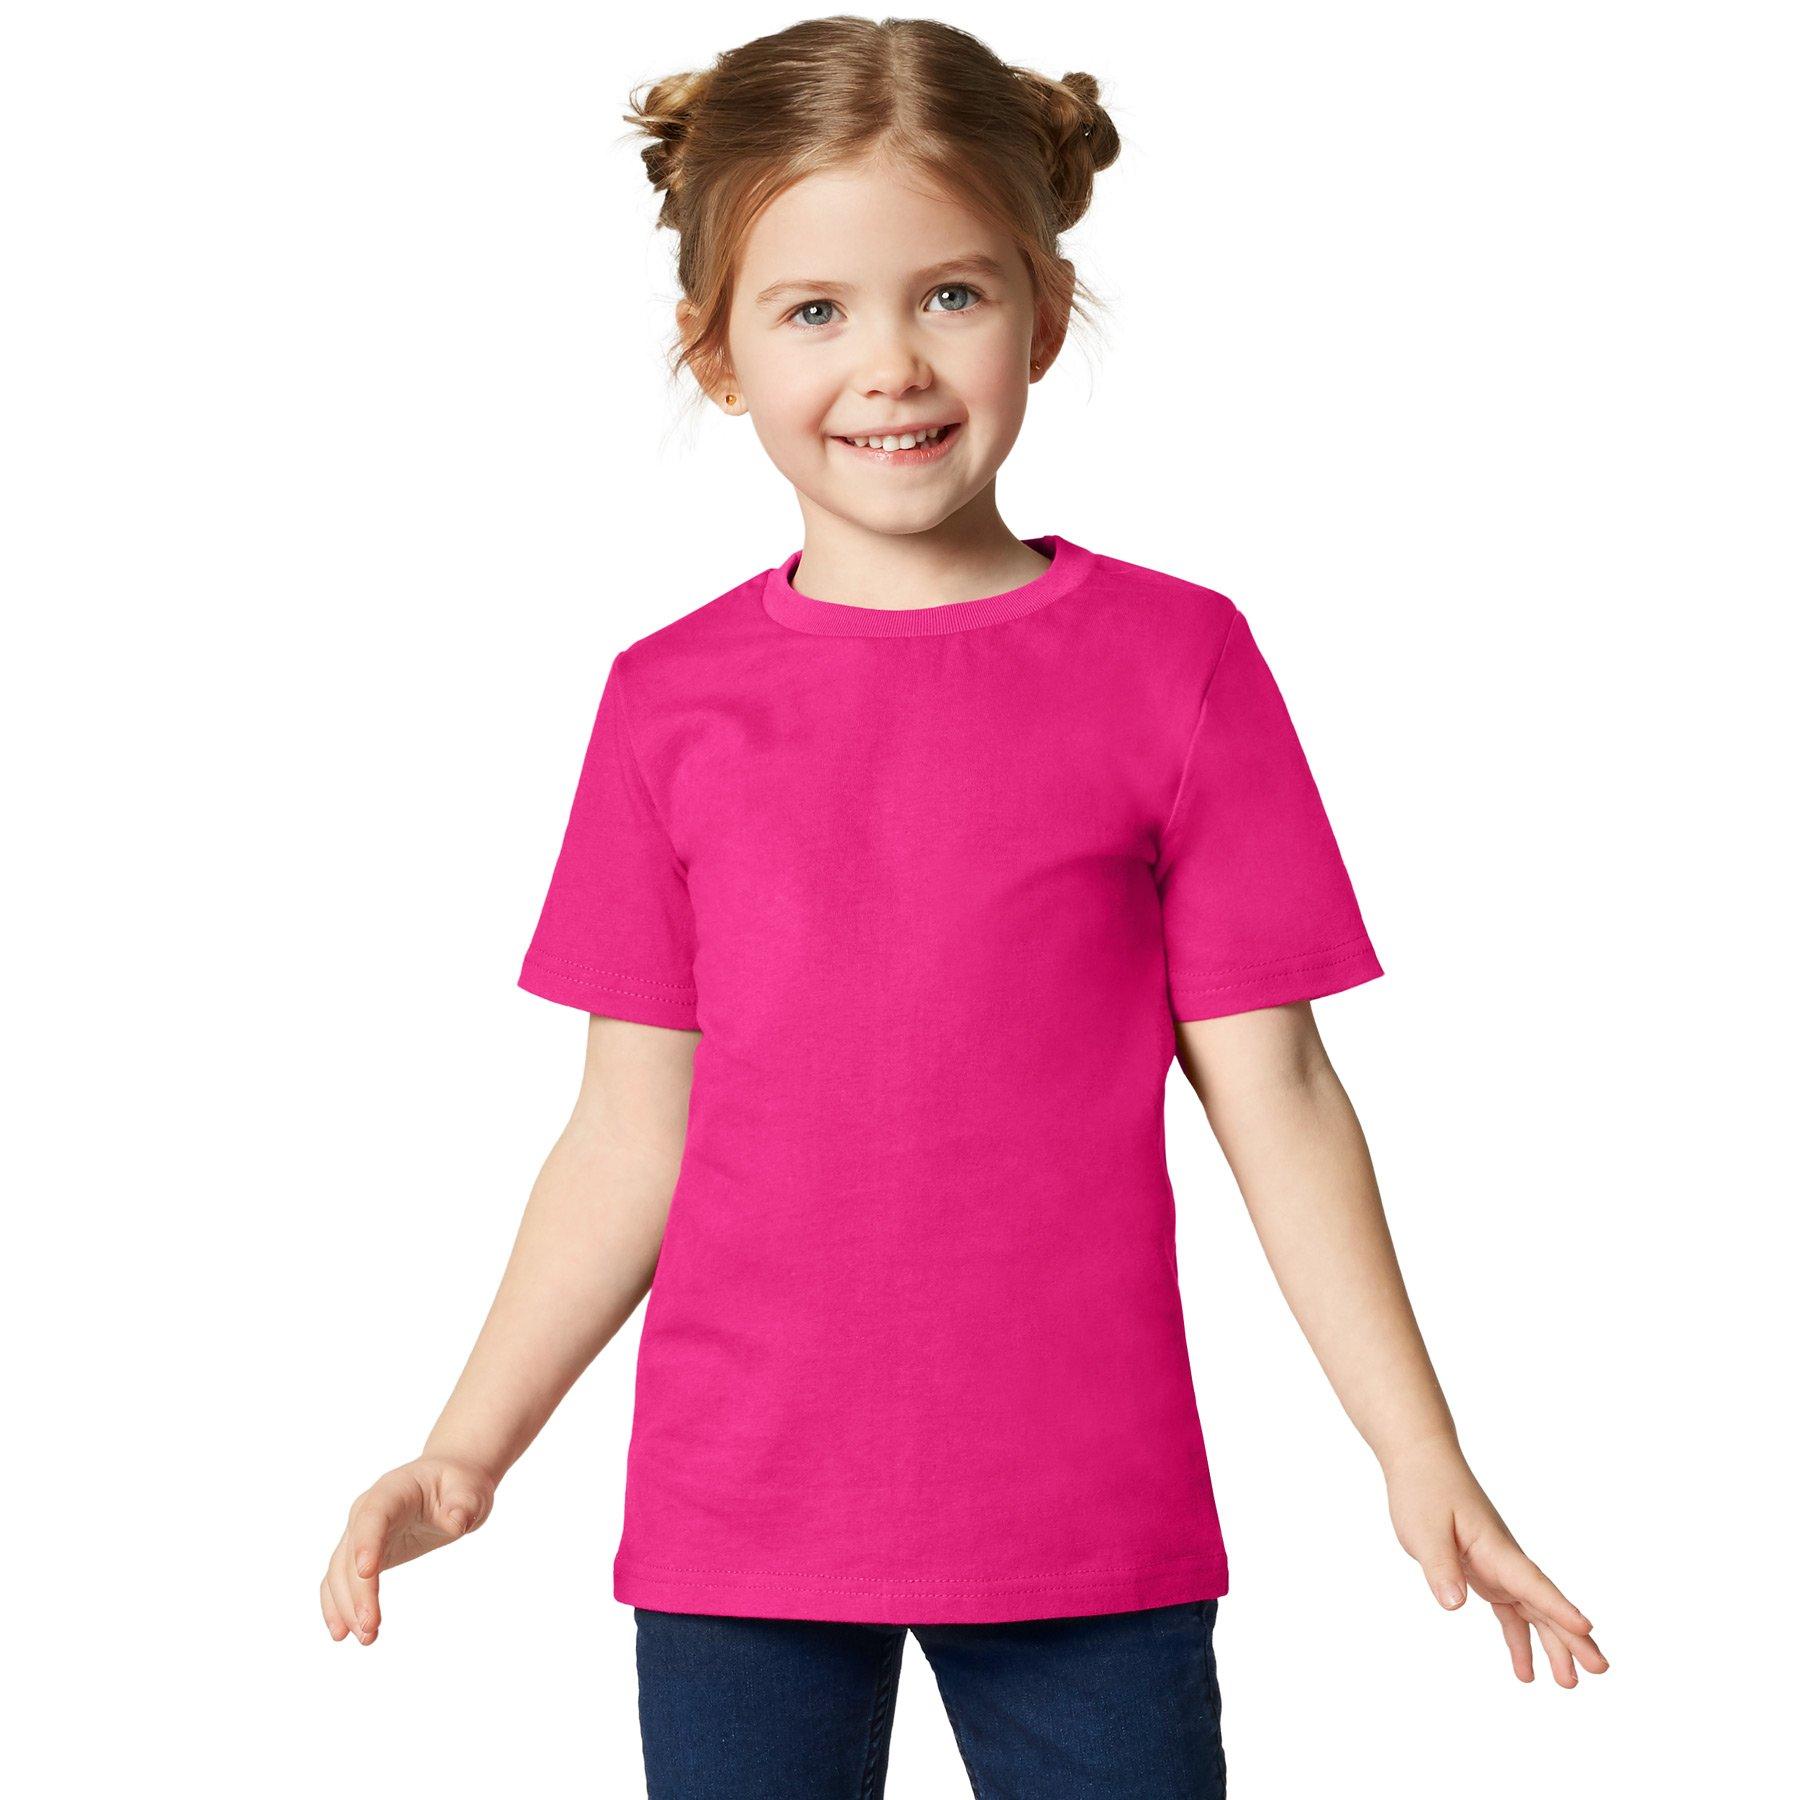 T-shirt Kinder Jungen Pink 152 von Tectake